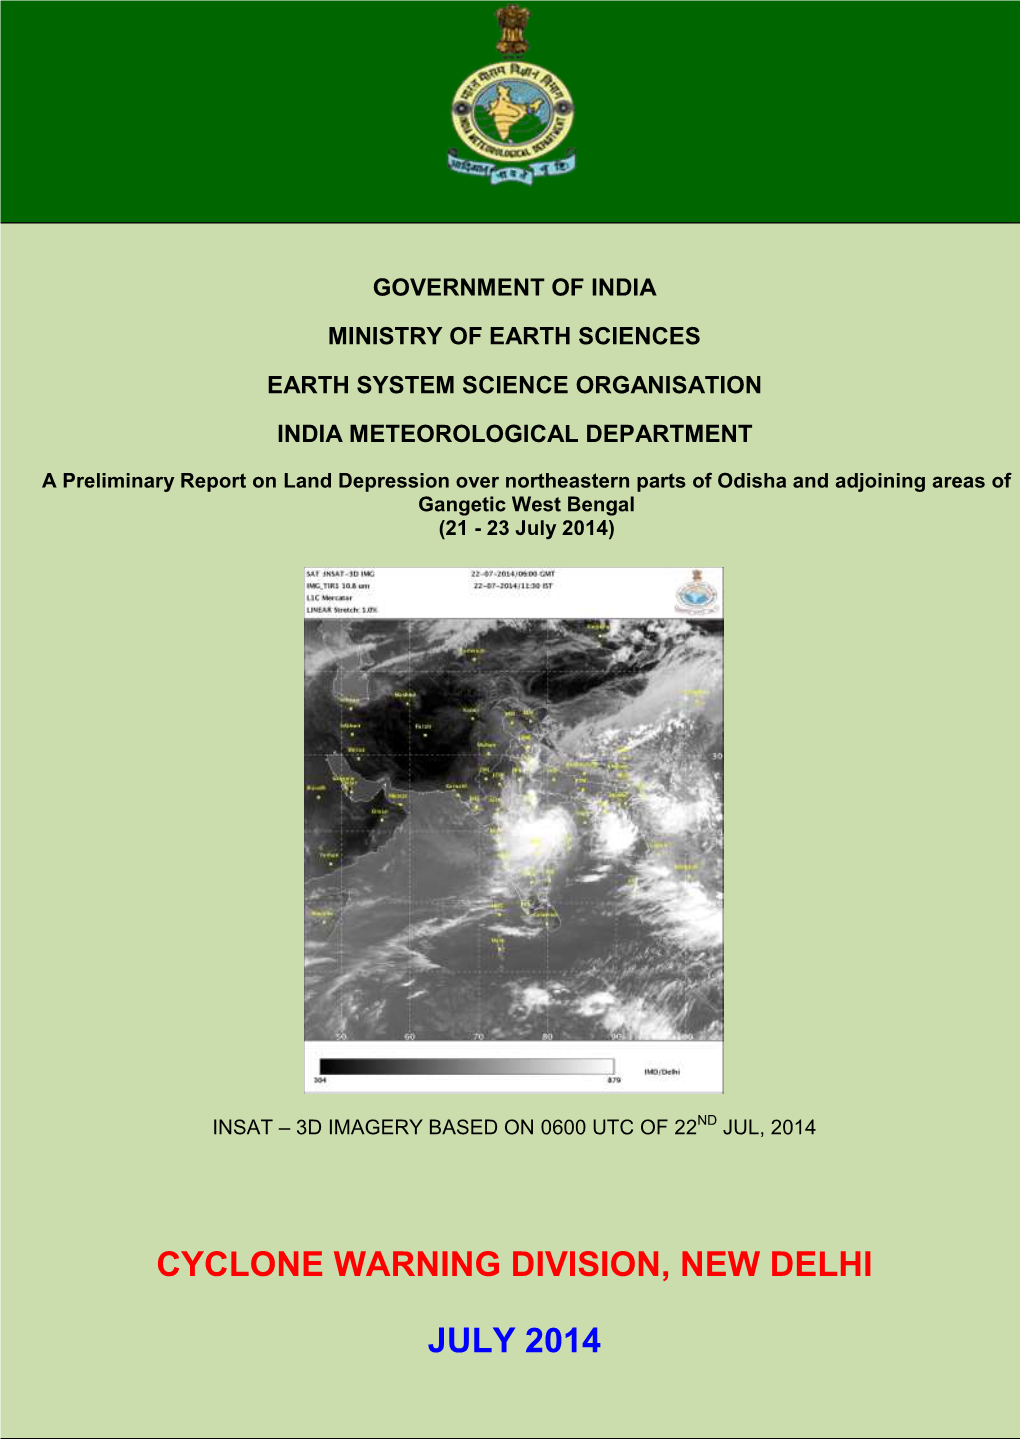 Cyclone Warning Division, New Delhi July 2014